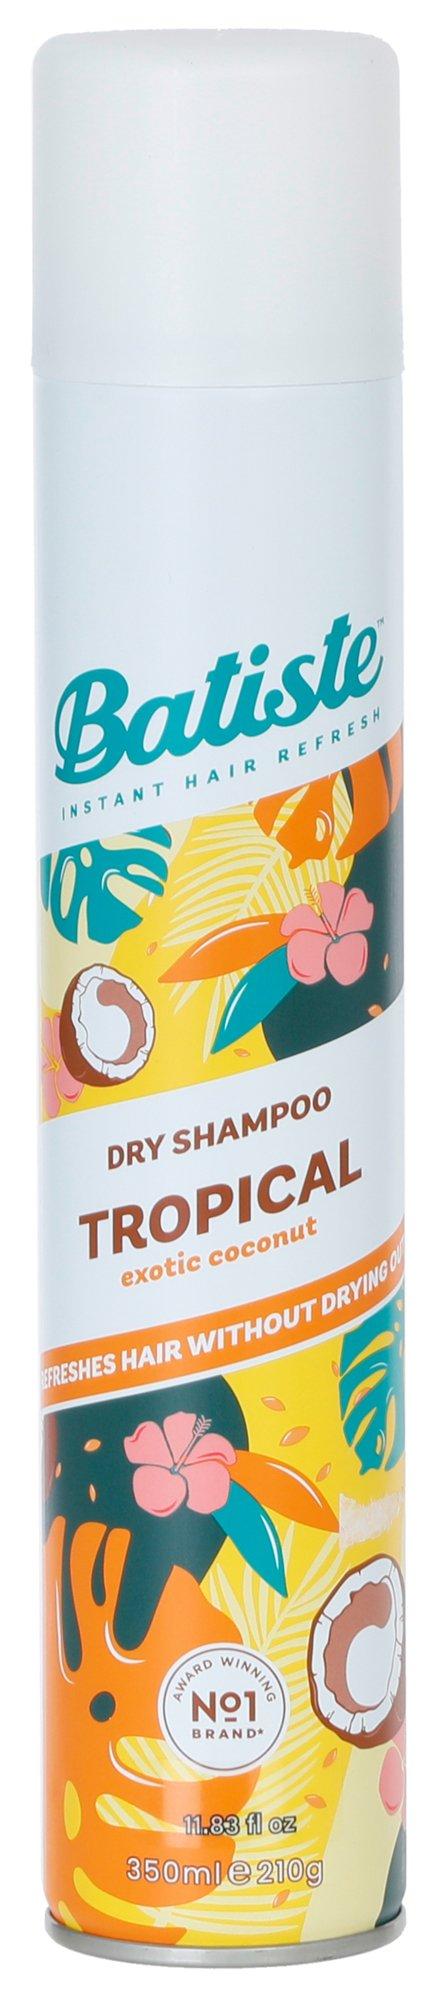 11oz Tropical Exotic Coconut Dry Shampoo